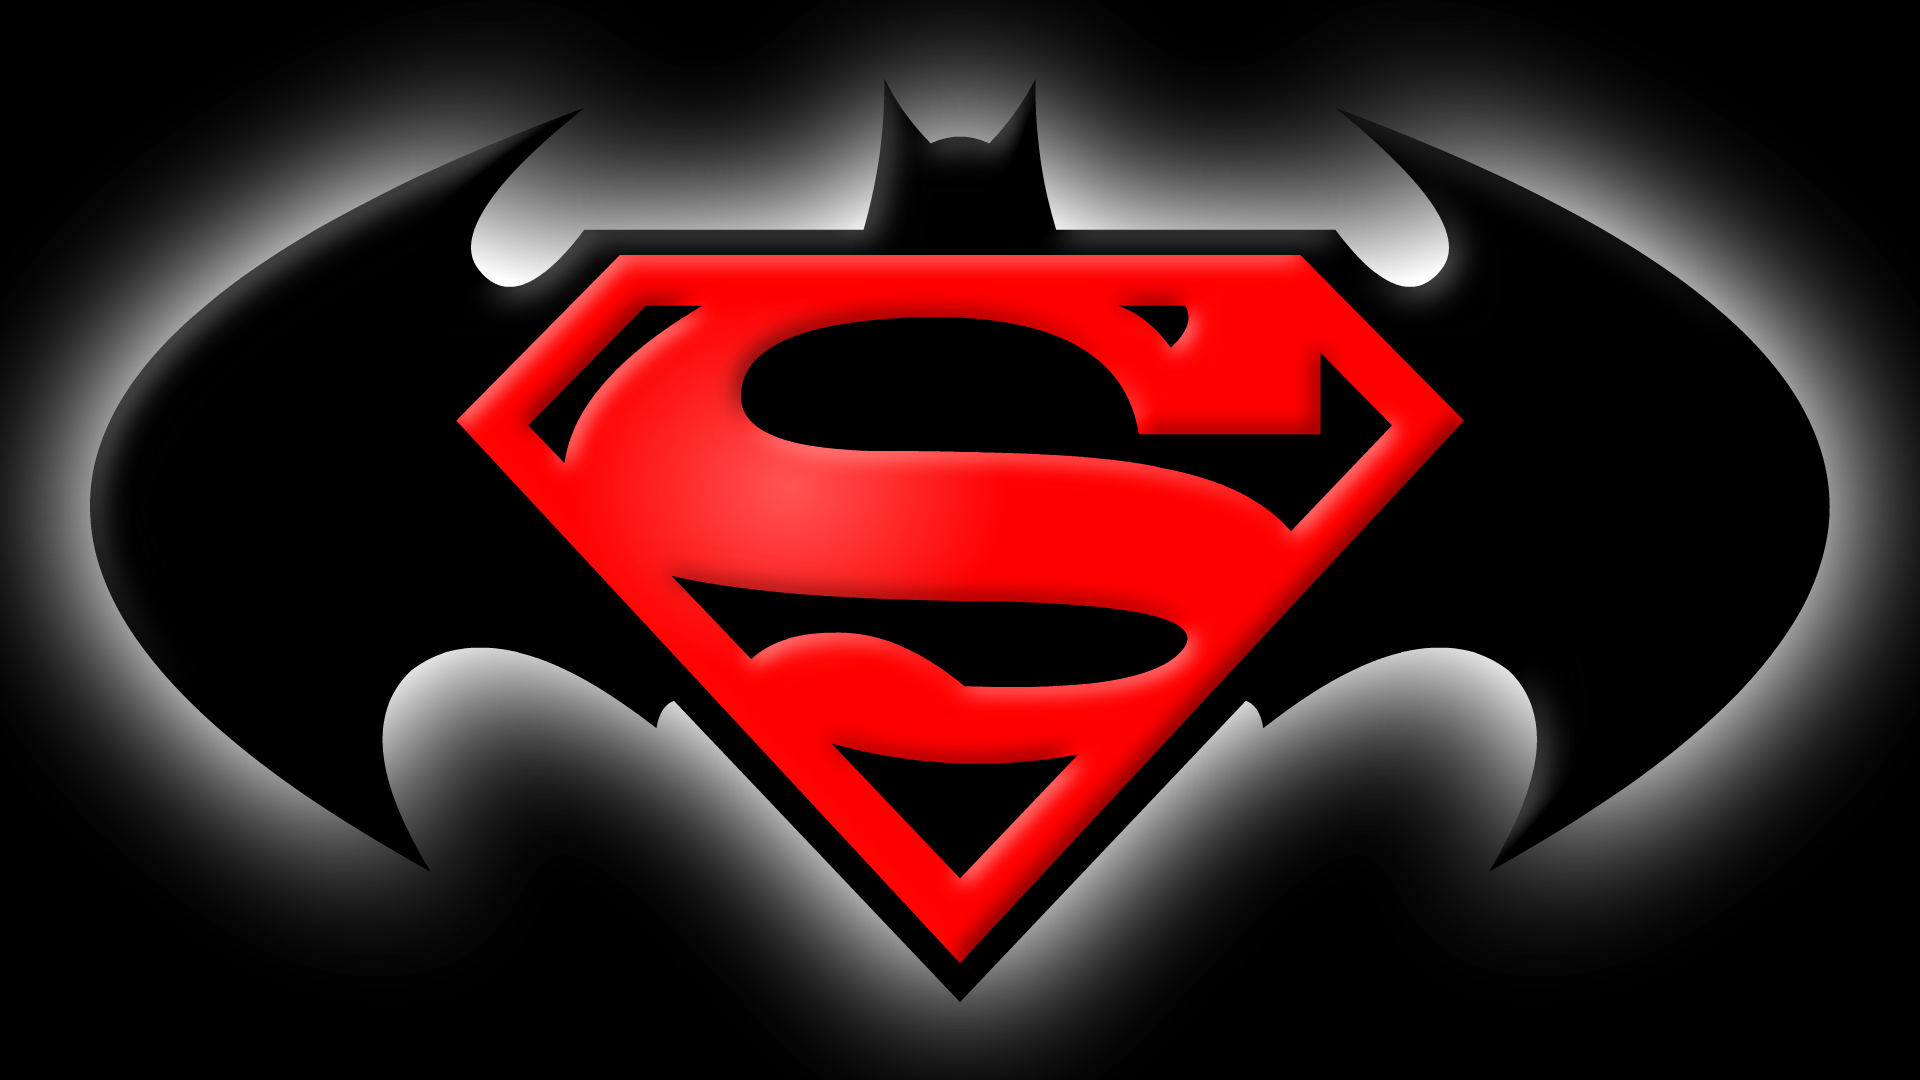 Free Batman Vs Superman Logo Png, Download Free Clip Art.